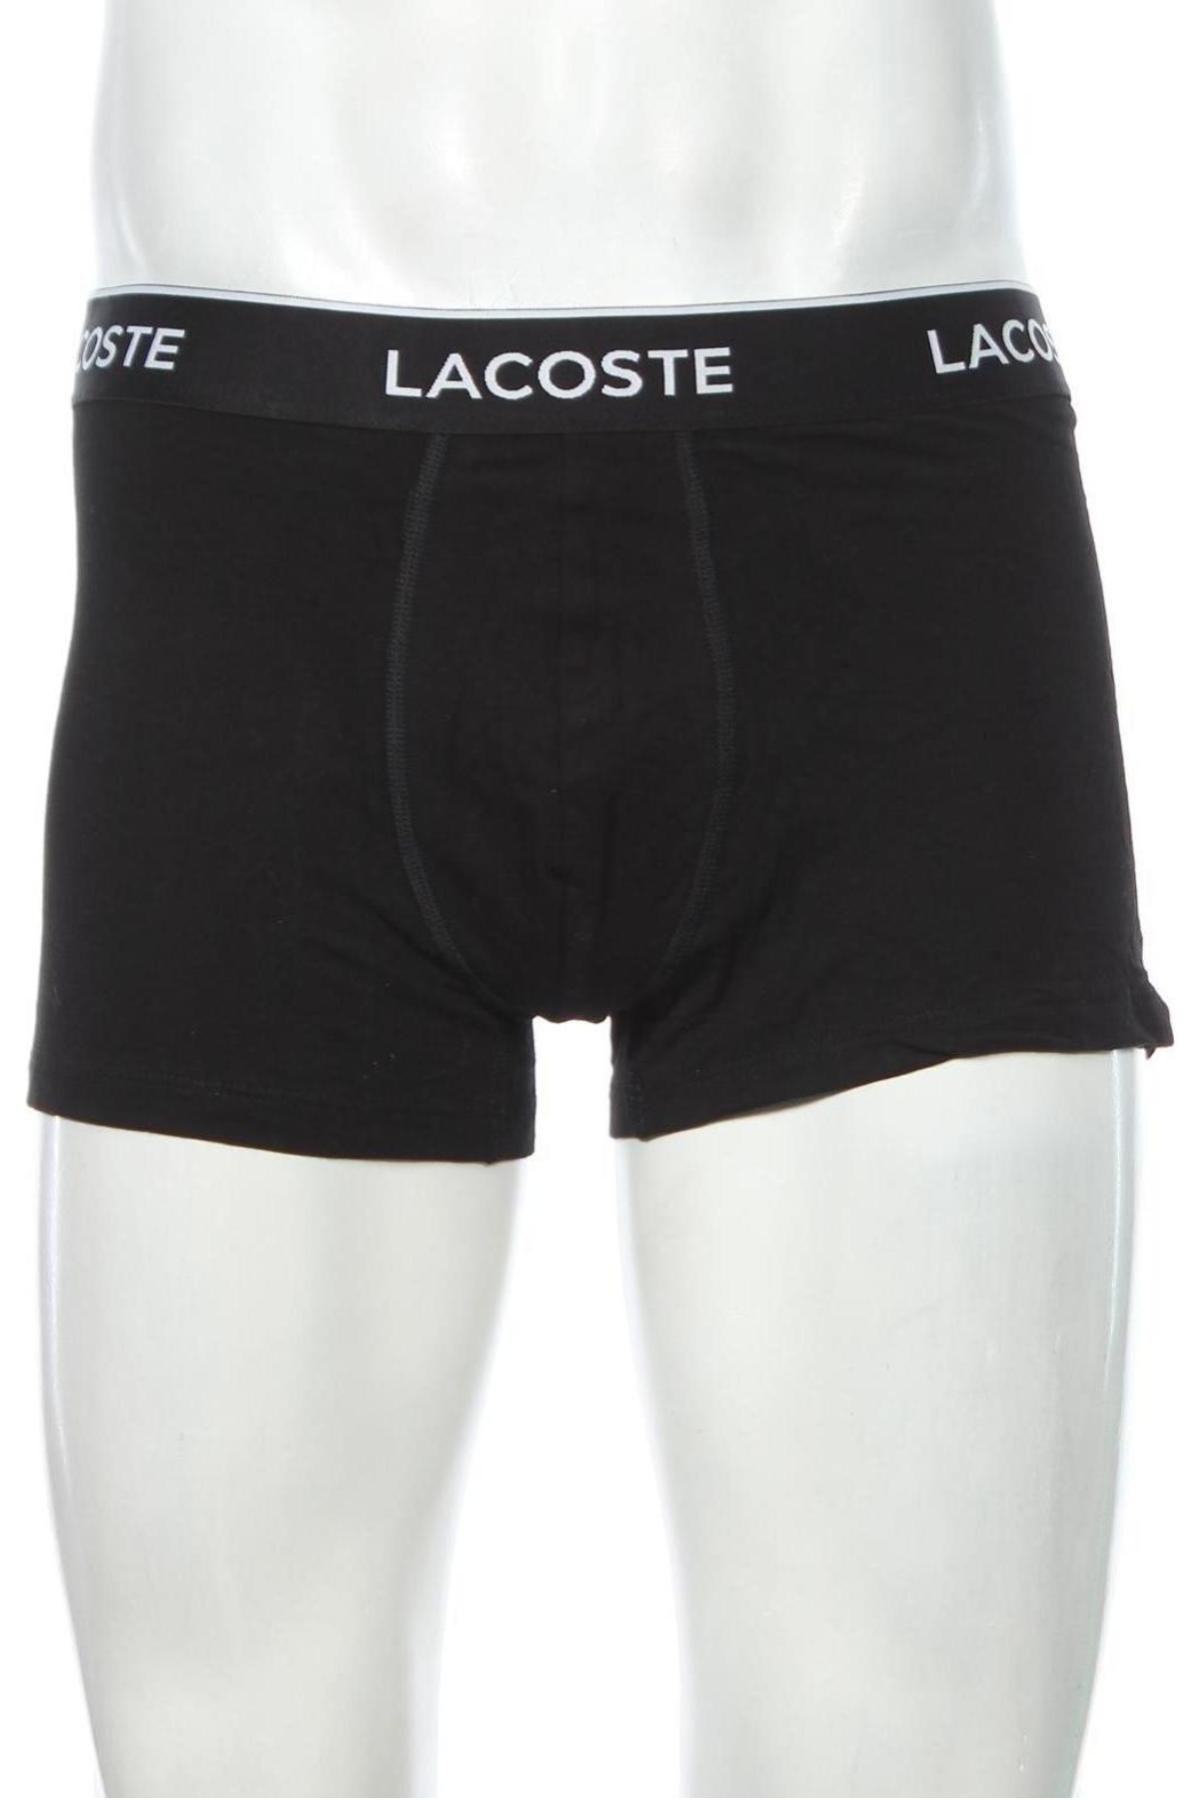 Pánský komplet  Lacoste, Velikost XL, Barva Černá, 95% bavlna, 5% elastan, Cena  968,00 Kč